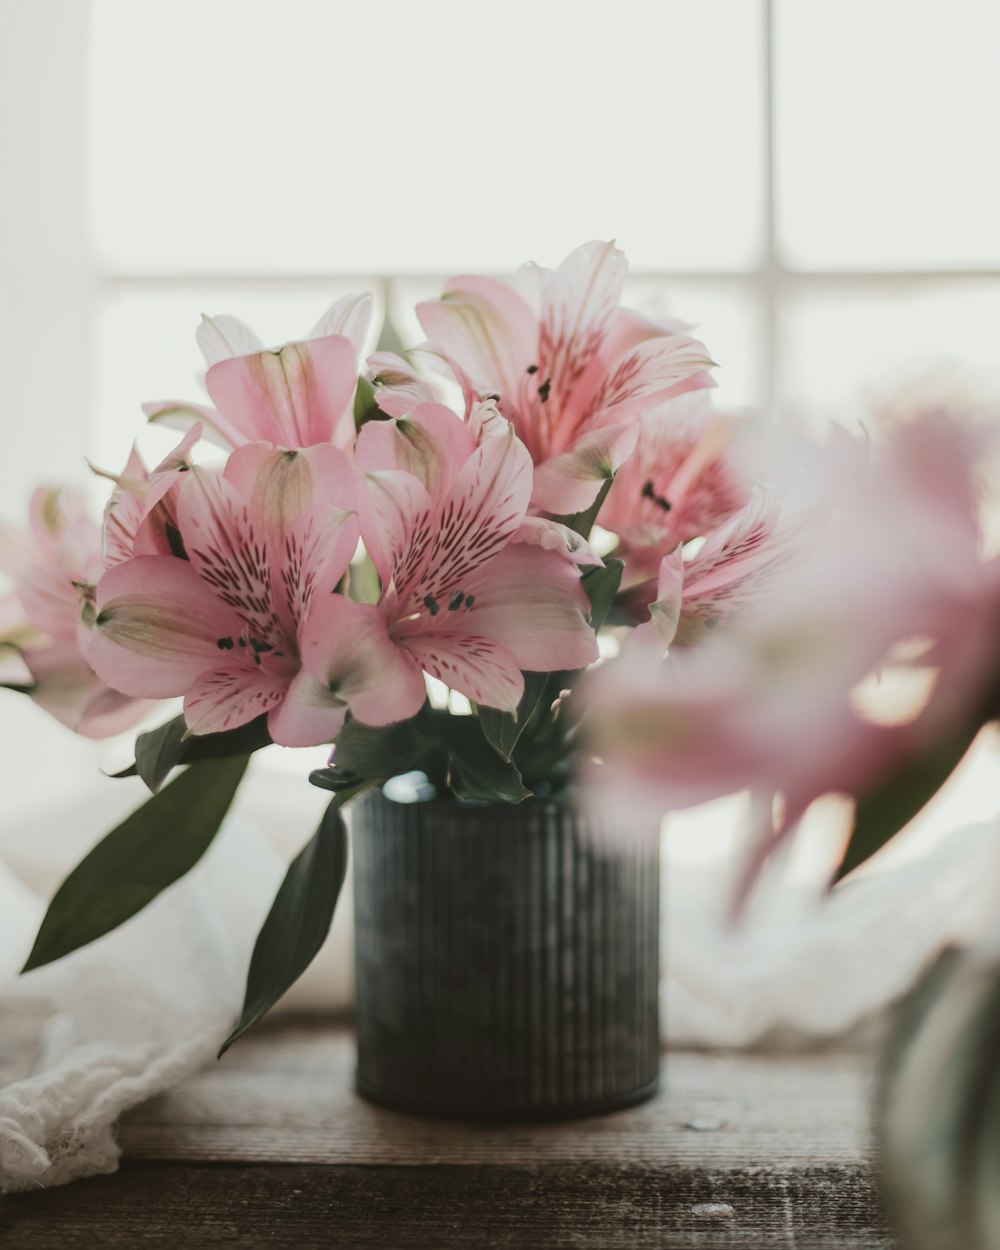 flores cor-de-rosa e brancas no vaso de cerâmica preta